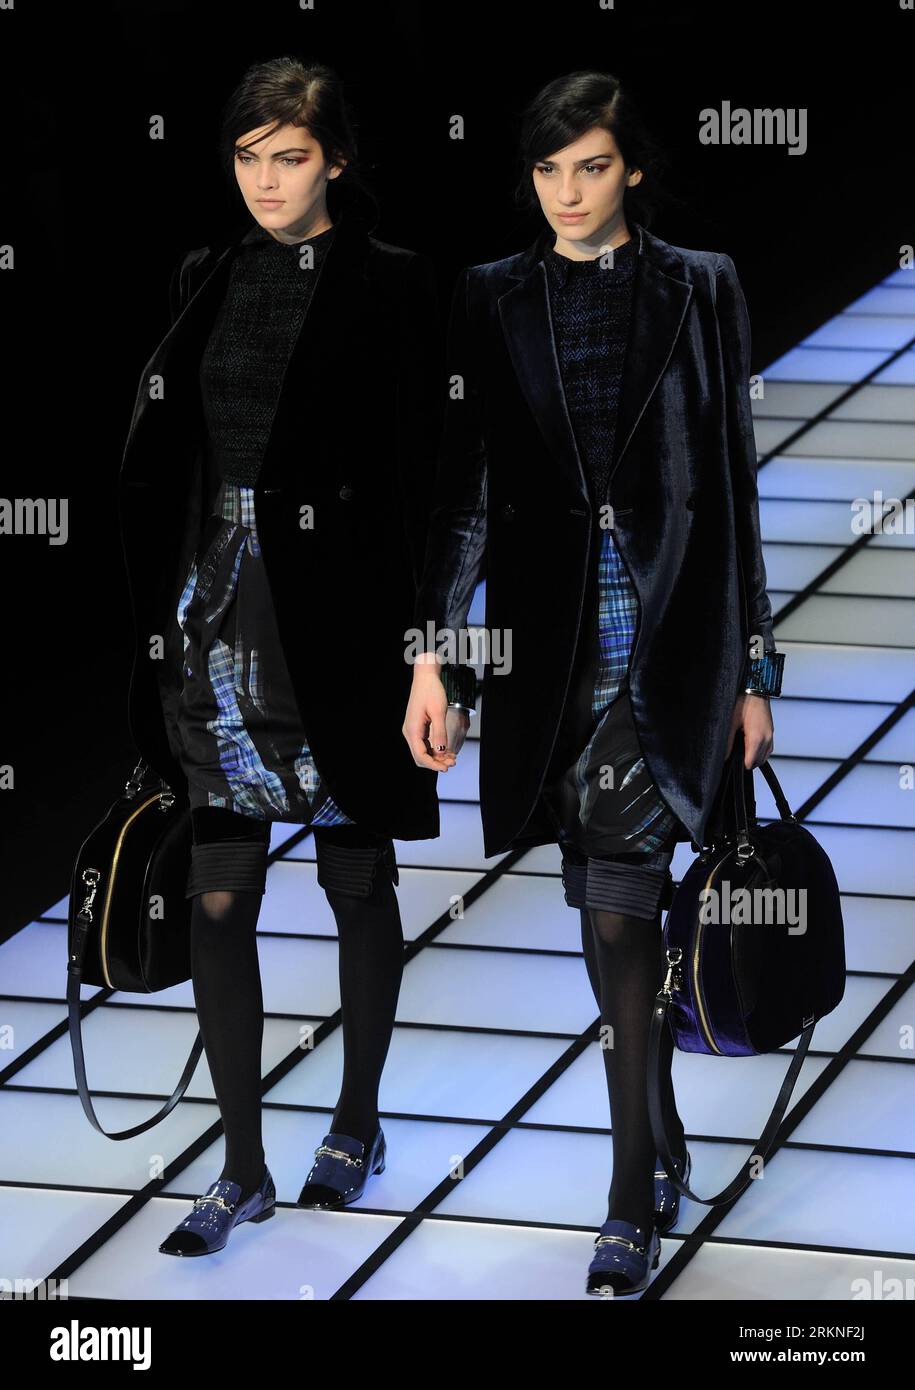 Bildnummer : 57108117 Datum : 25.02.2012 Copyright : imago/Xinhua (120226) -- MILAN, 26 février 2012 (Xinhua) -- des mannequins présentent des créations de la marque italienne Emporio Armani lors de la Fashion week de Milan vêtements pour femmes automne/hiver 2012 à Milan, Italie, 25 février 2012. (Xinhua/Wang Qingqin) (zhs) ITALY-MILAN-FASHION WEEK-EMPORIO ARMANI PUBLICATIONxNOTxINxCHN Kultur Entertainment Fashion Modenschau Modewoche Mailand Damenmode xdp x0x premiumd 2012 hoch 57108117 Date 25 02 2012 Copyright Imago XINHUA Milan Fév 26 2012 XINHUA Models présentent des créations de la marque de mode italienne Emporio AR Banque D'Images